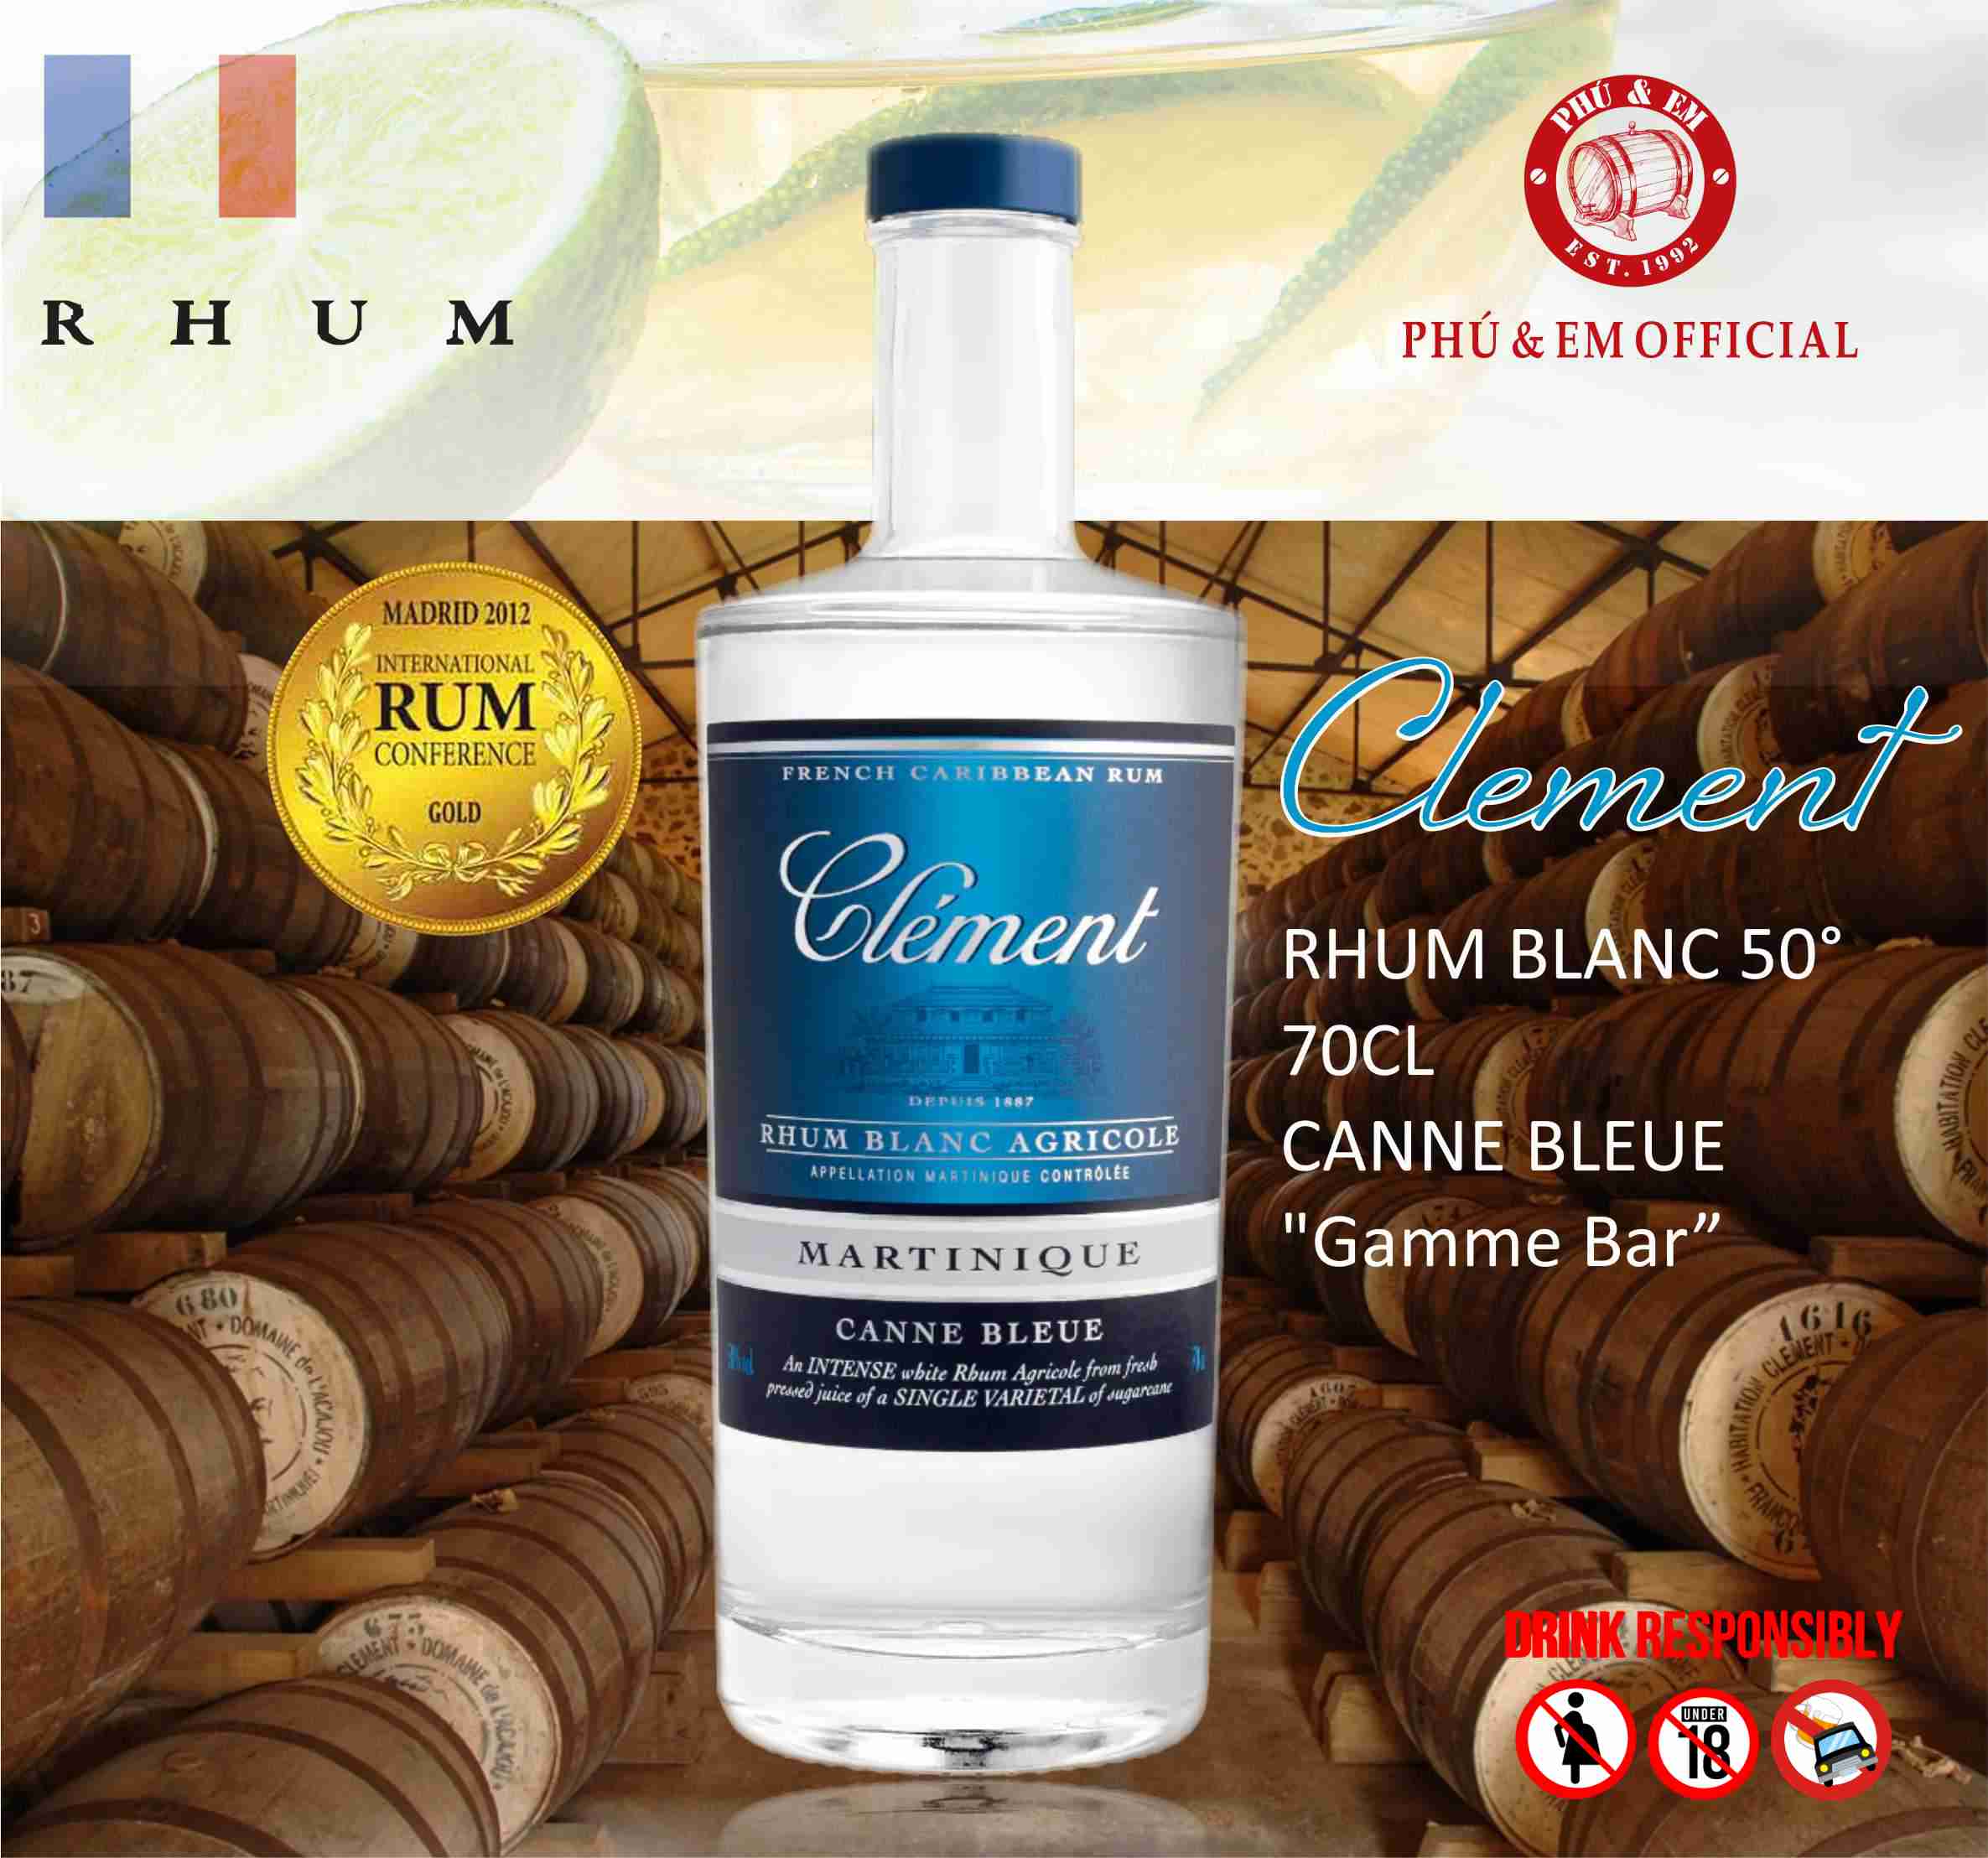 Rượu Mạnh Clement RHUM BLANC 50° 70CL CANNE BLEUE Gamme Bar